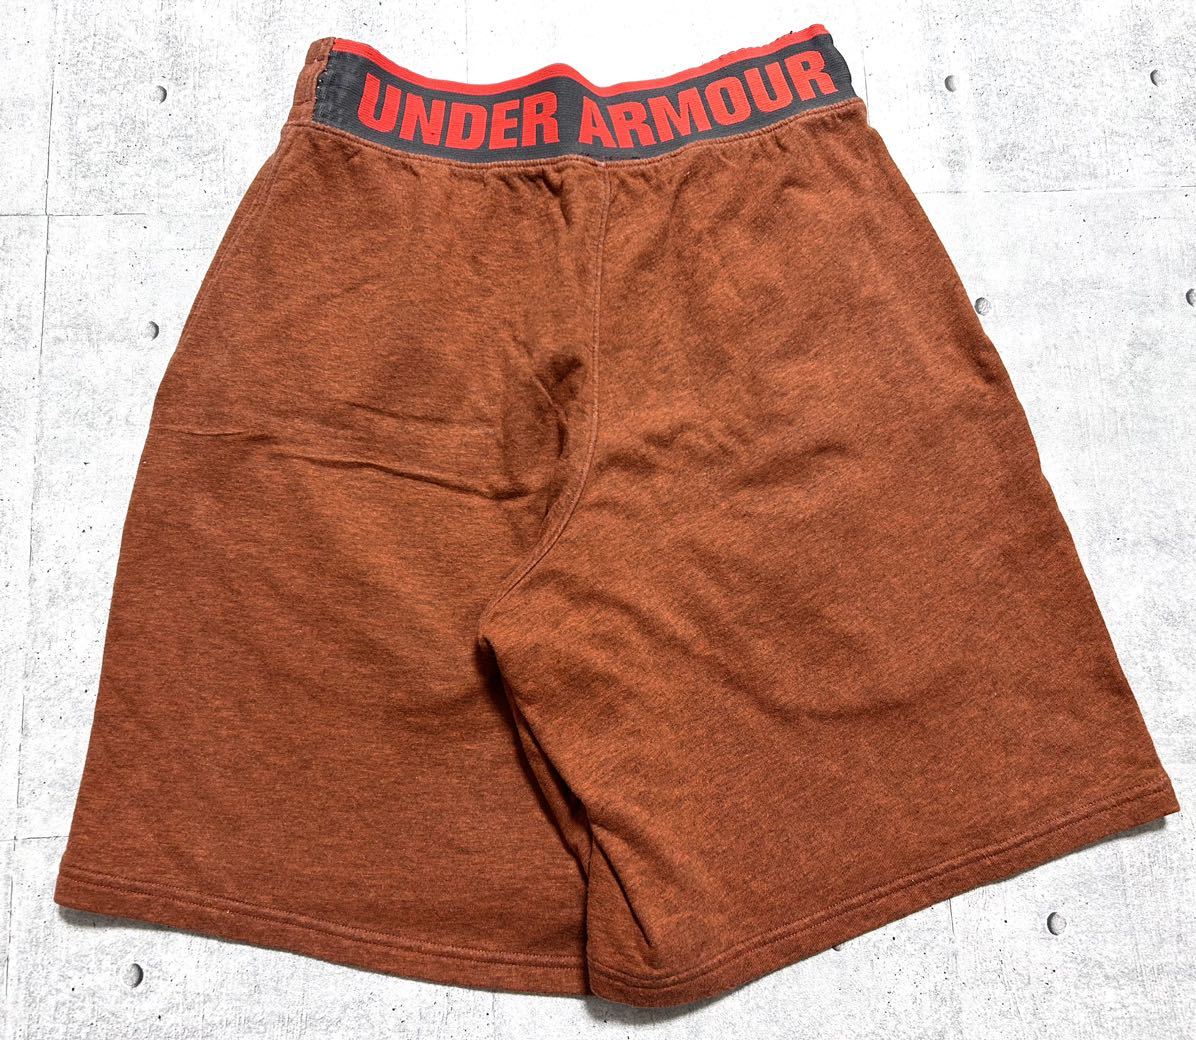  Under Armor тренировочный шорты шорты вышивка с логотипом спорт одежда тренировка UNDER ARMOUR.2413